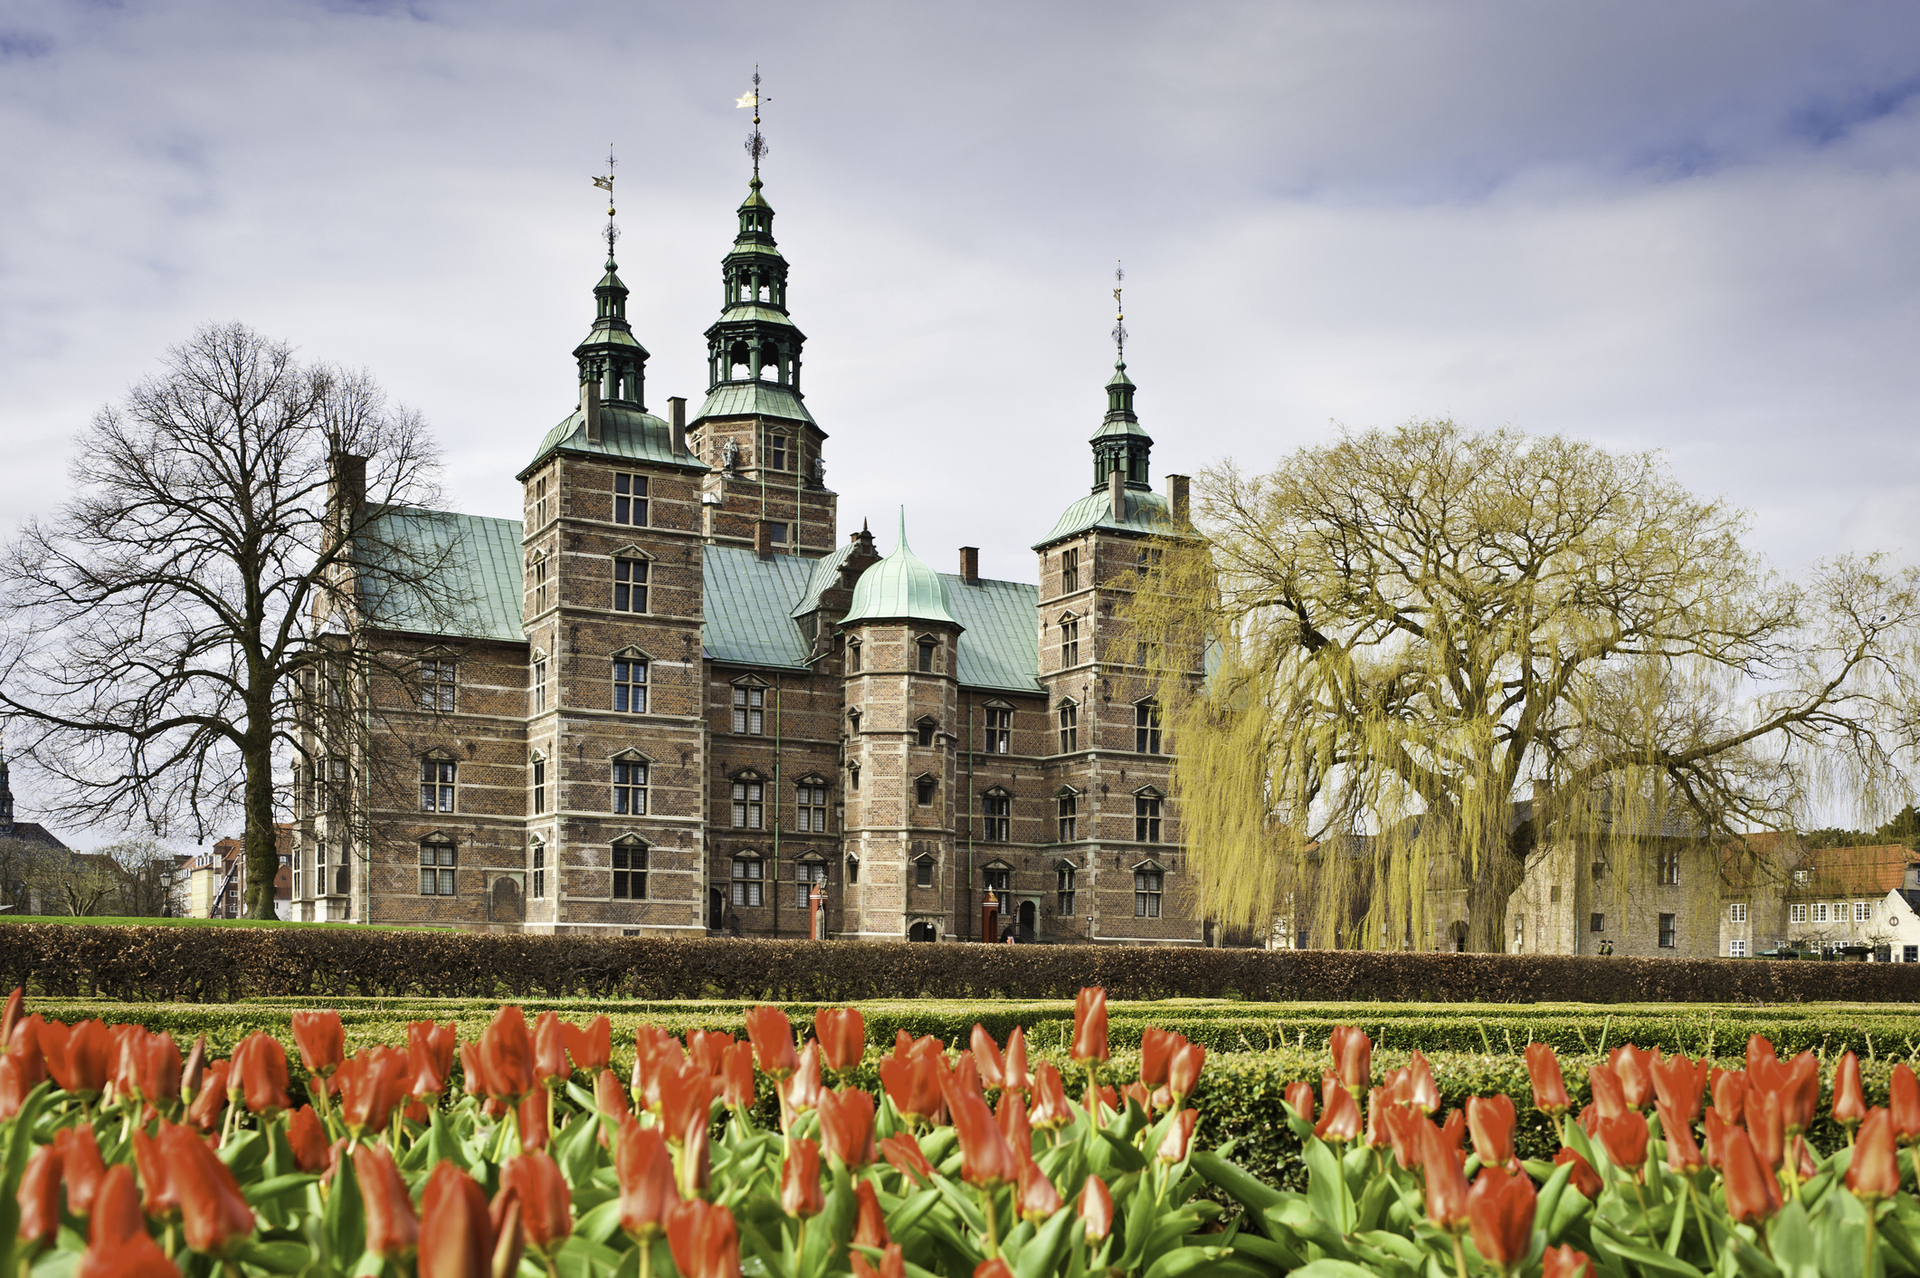 Vista do castelo Rosenborg, um dos cartões-postais de Copenhague, na Dinamarca